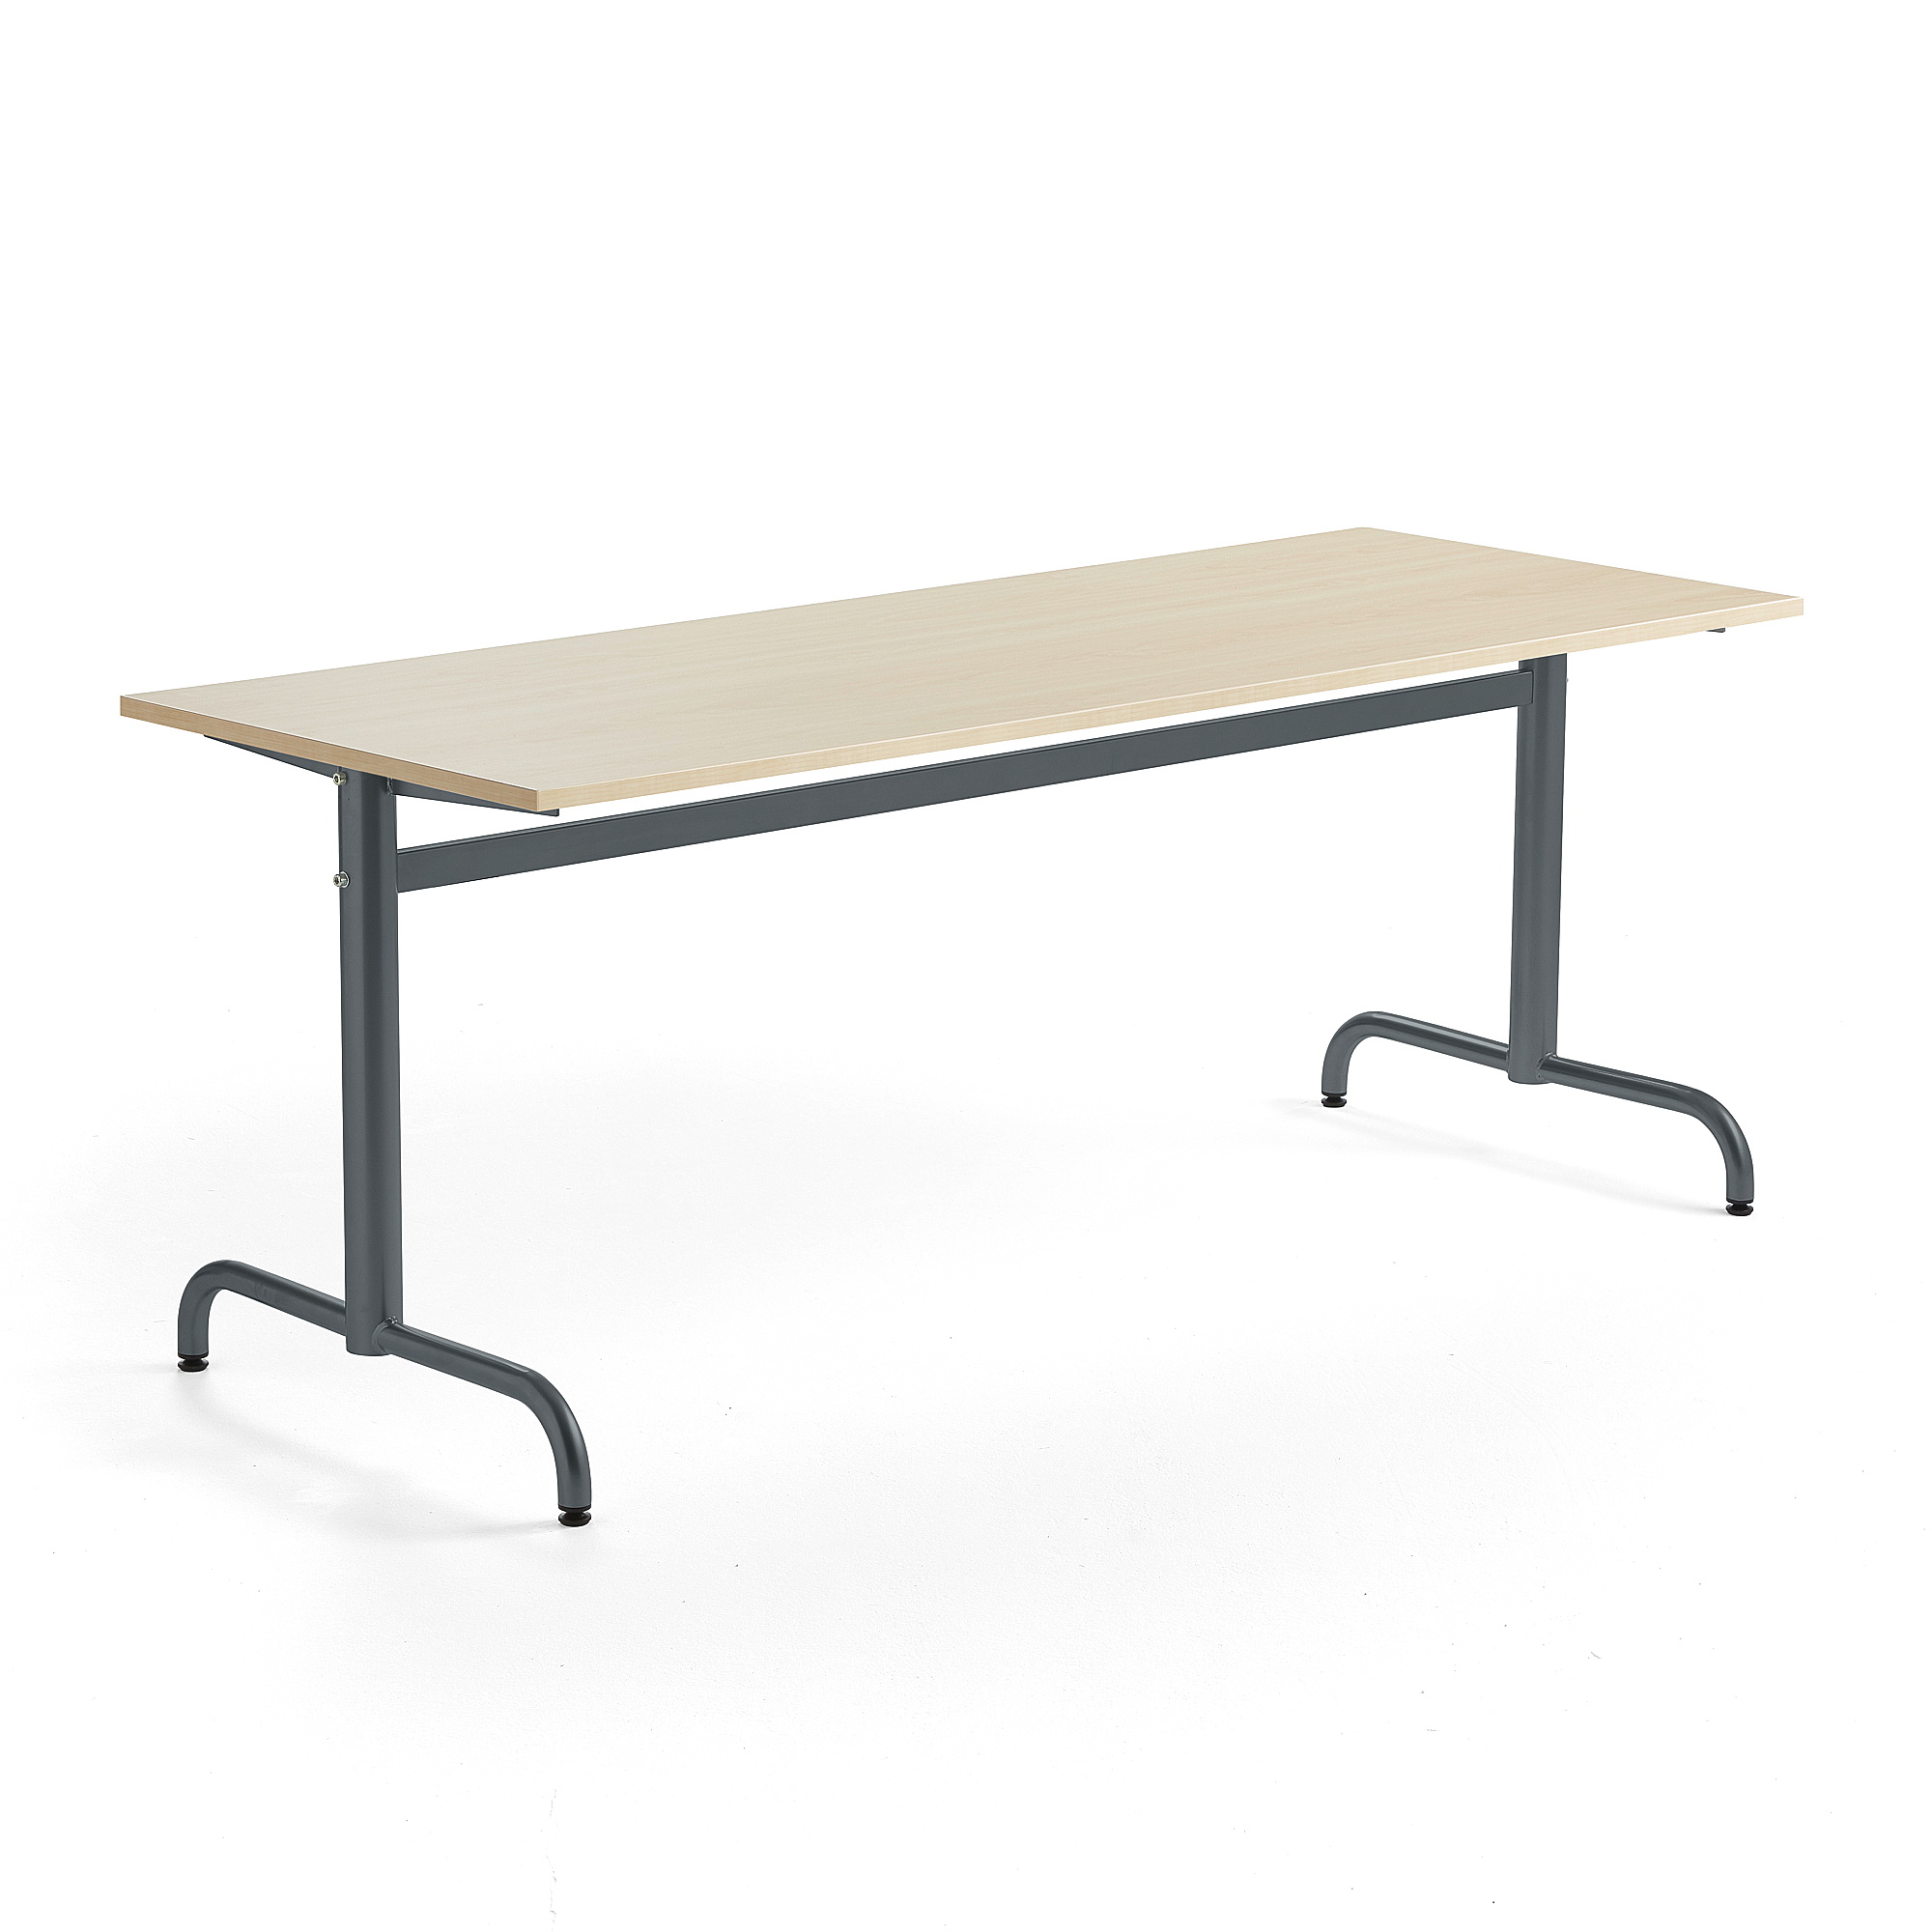 Stůl PLURAL, 1800x700x720 mm, akustická HPL deska, bříza, antracitově šedá